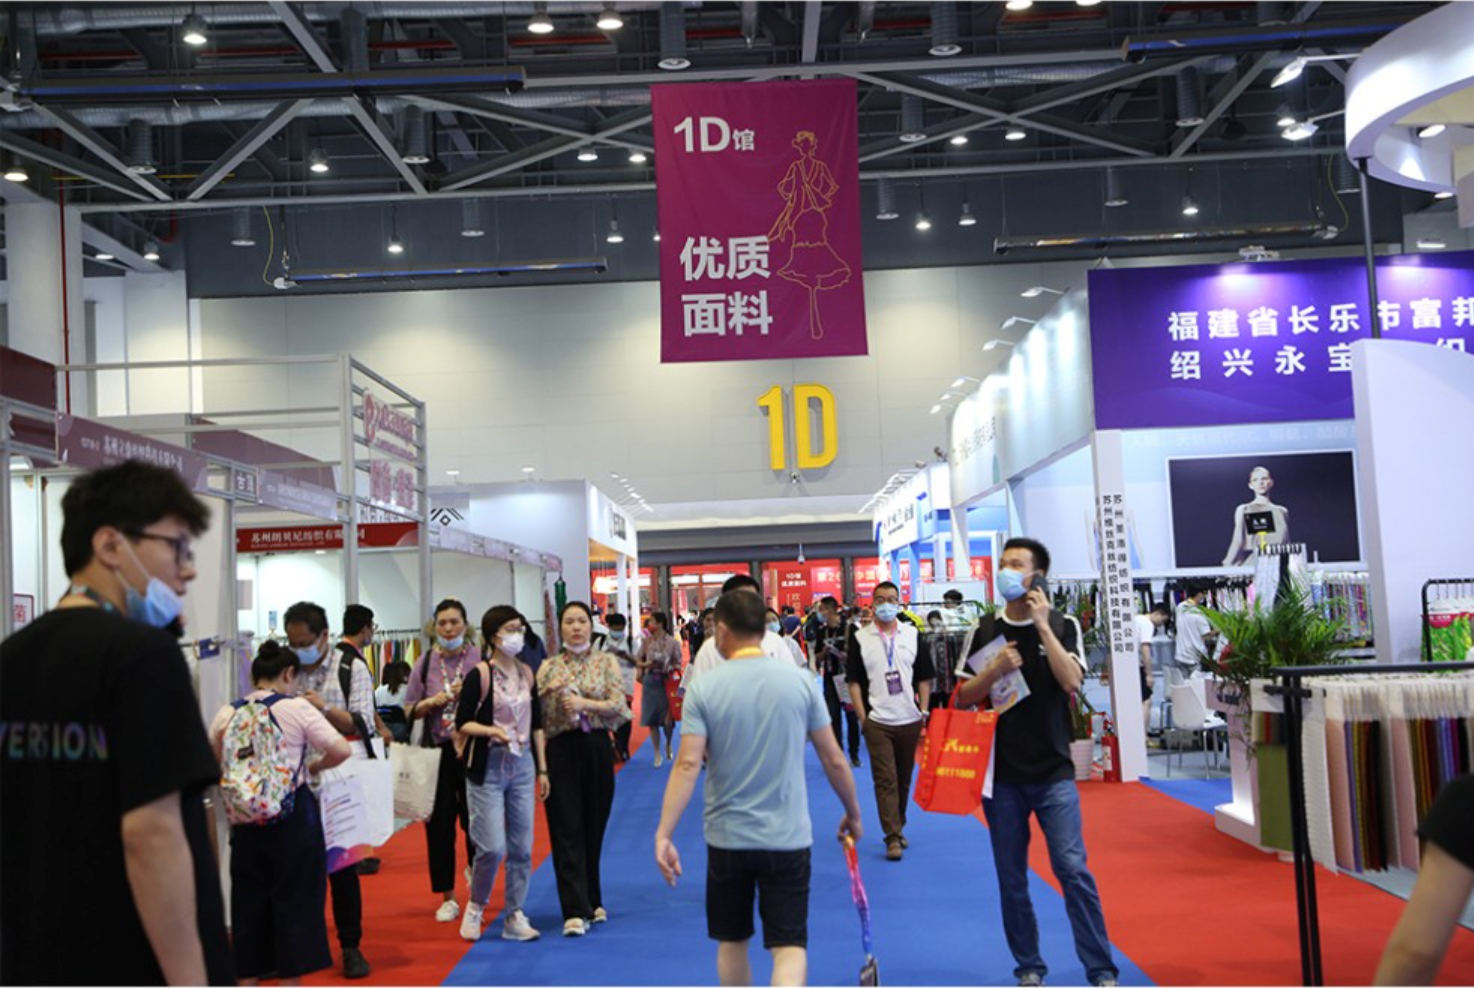 2024年第32届中国(杭州)国际纺织服装供应链博览会